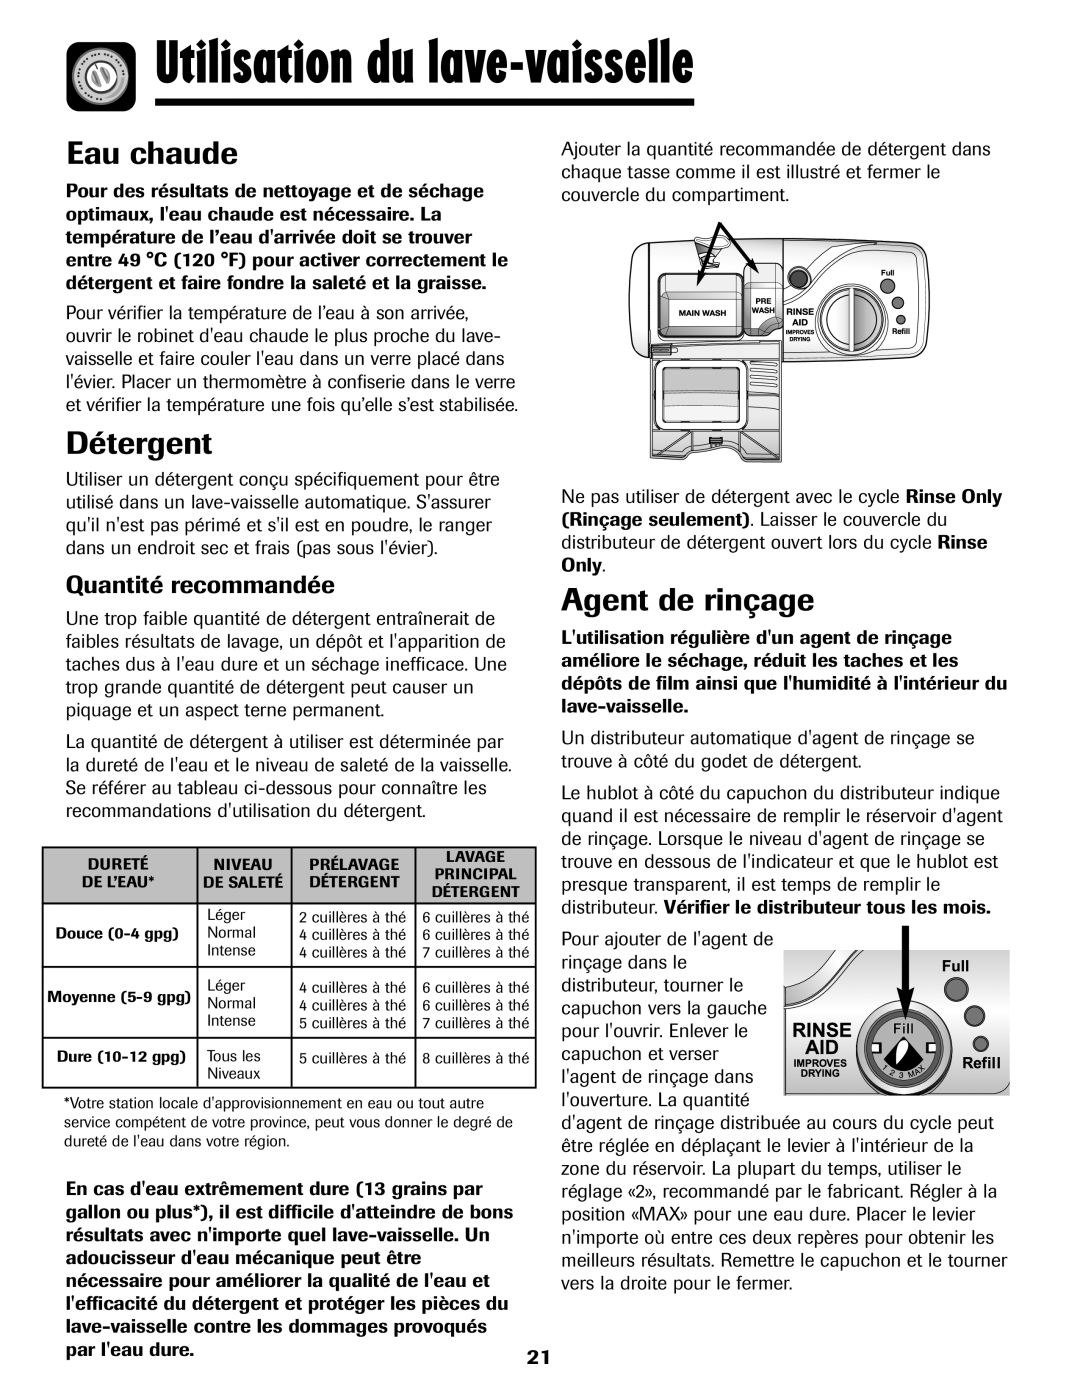 Amana ADB-1 warranty Utilisation du lave-vaisselle, Eau chaude, Détergent, Agent de rinçage, Quantité recommandée 